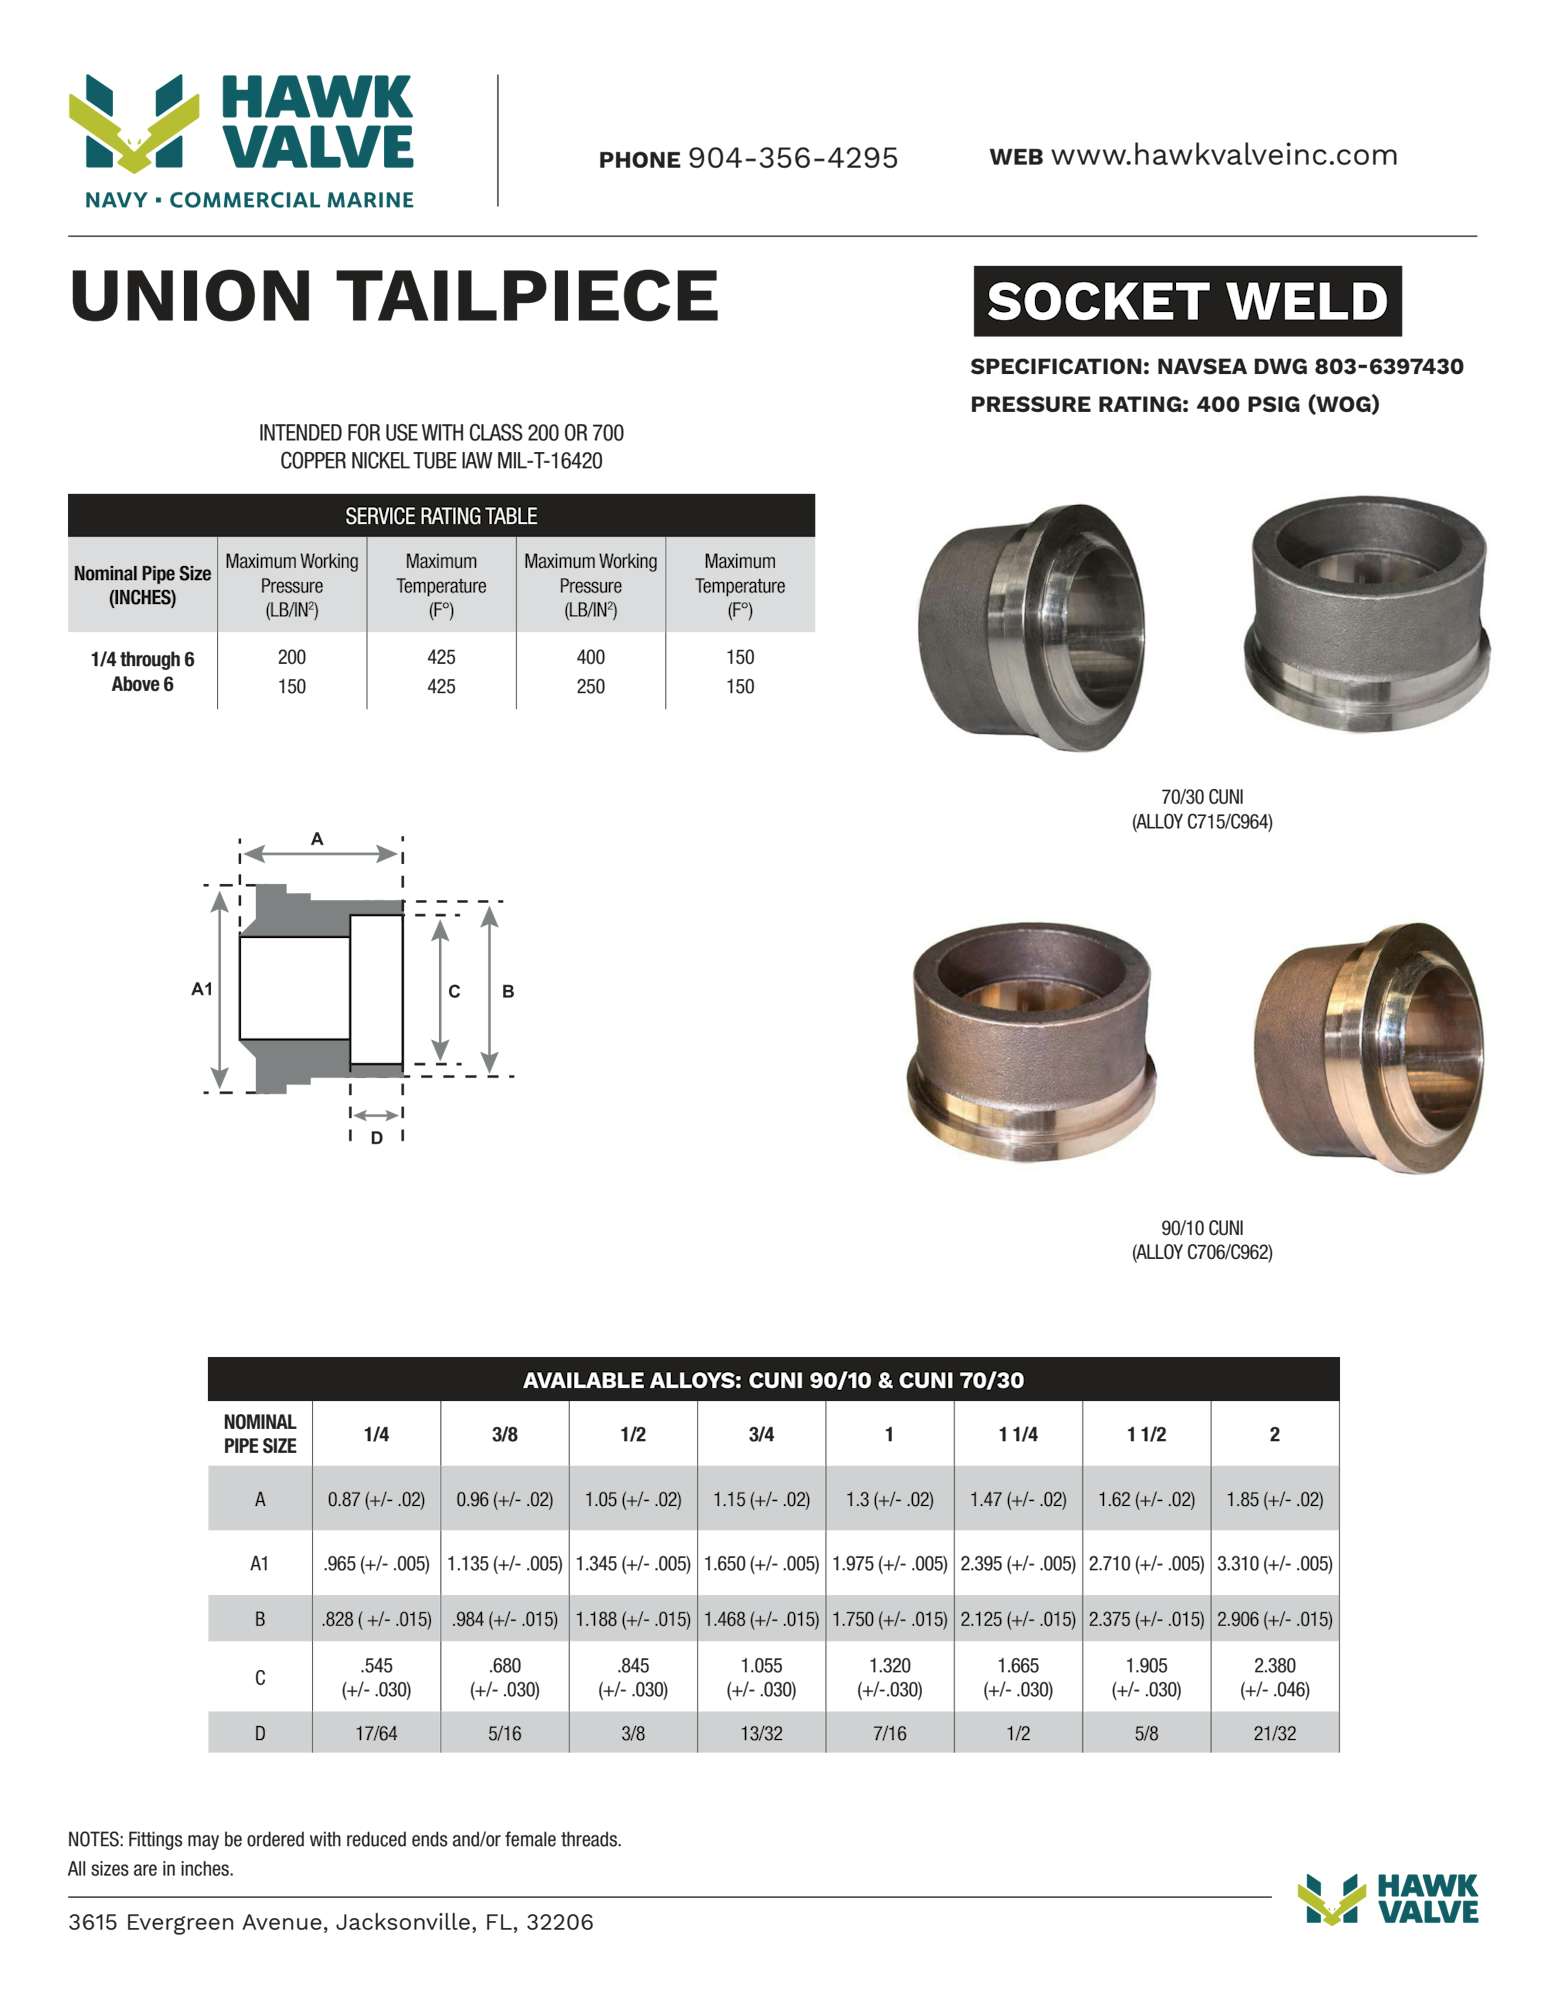 CUNI-union-tailpiece.pdf